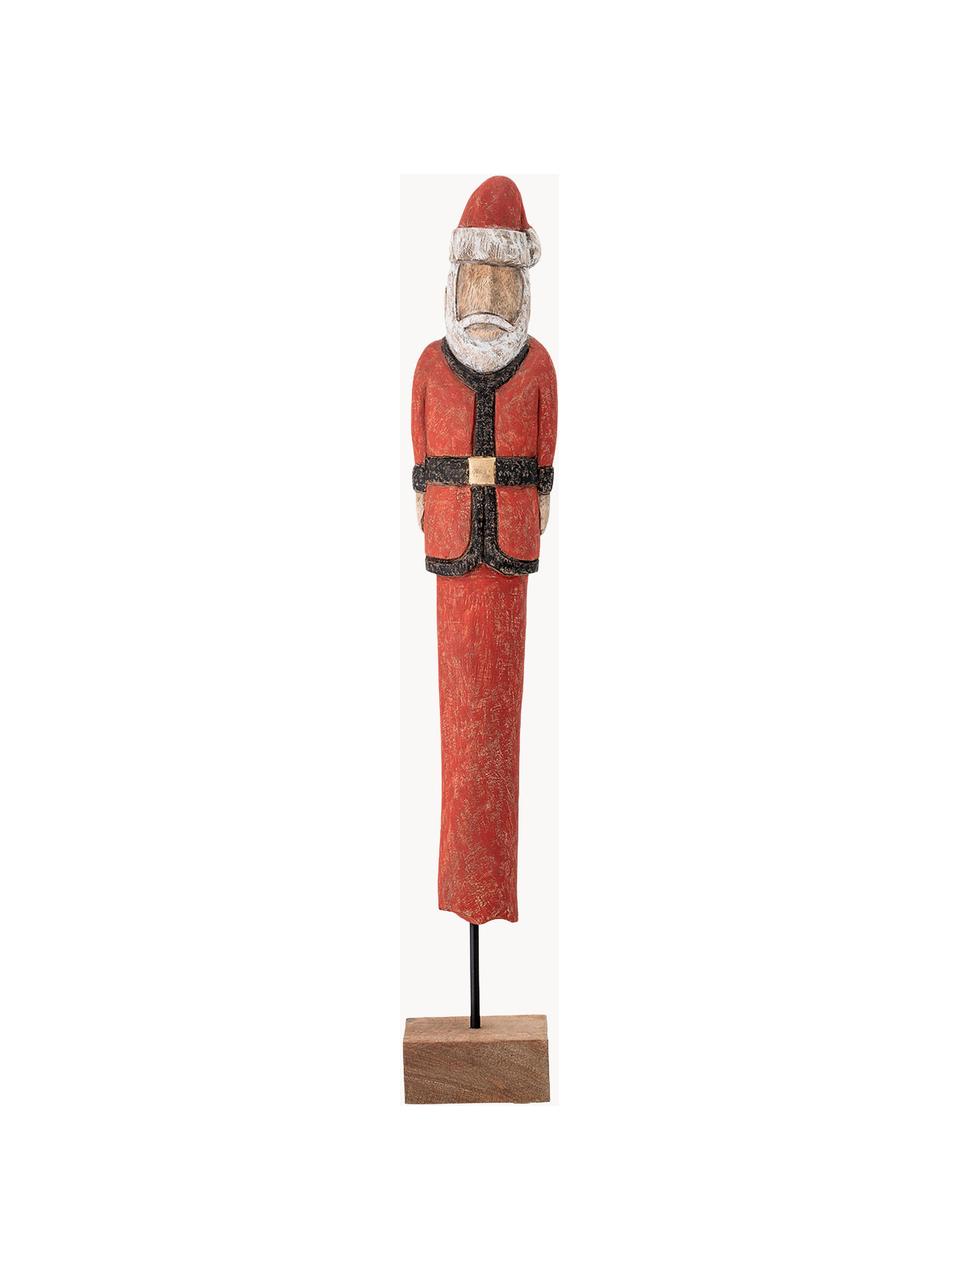 Dekorace Santa, V 56 cm, Potažené mangové dřevo, kov, Červená, černá, bílá, hnědá, Š 10 cm, V 56 cm